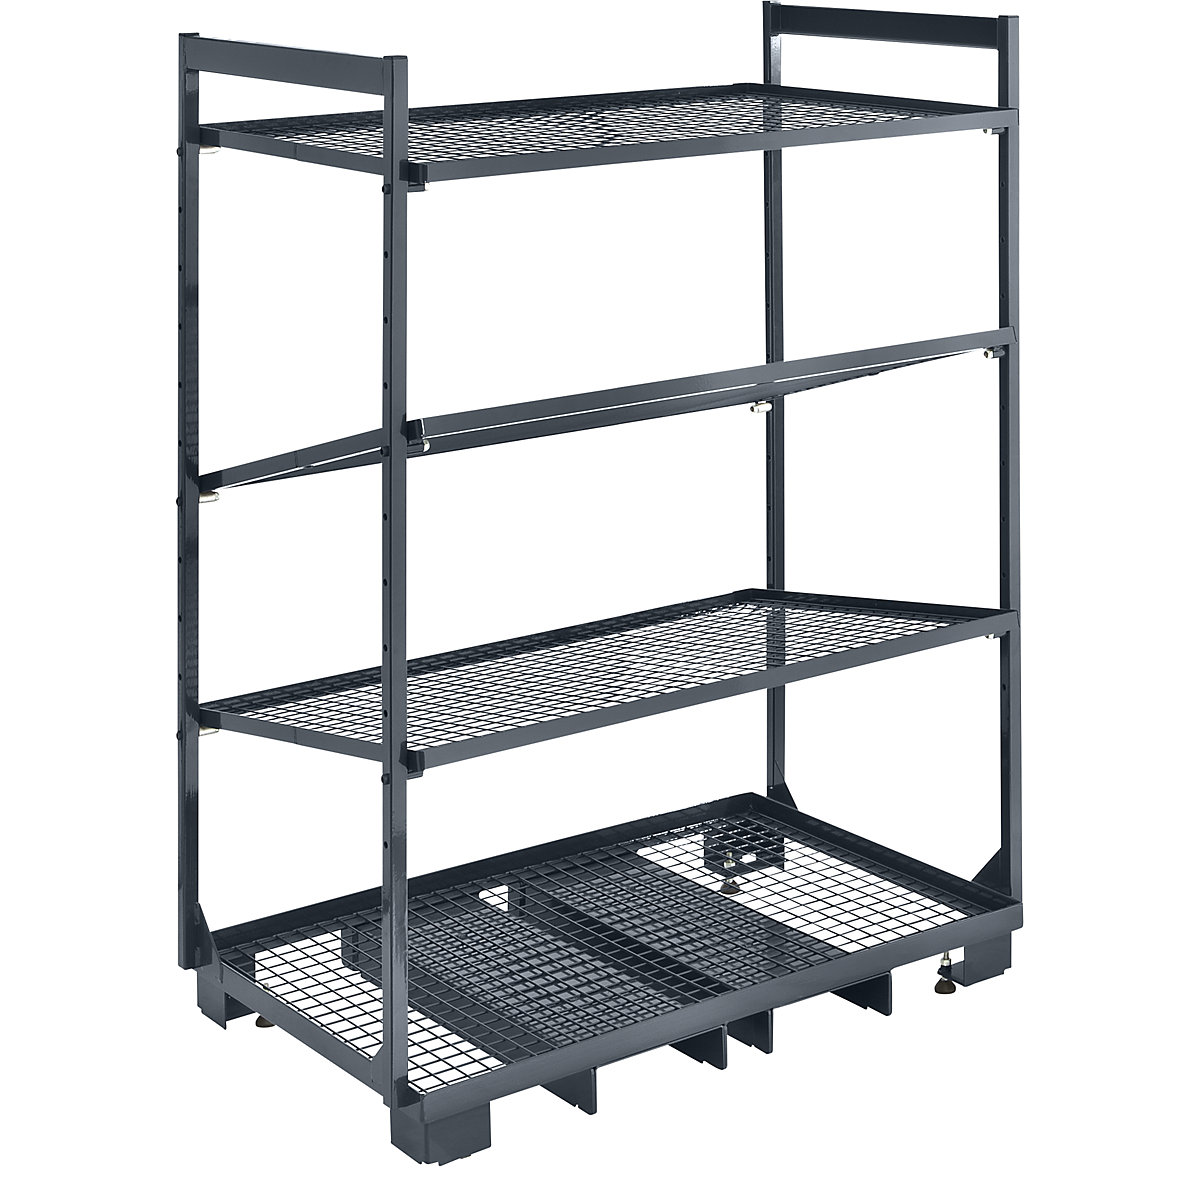 Tablarträger Shelf Holder Shelf Carrier Shelf Rack Floor Carrier b001 